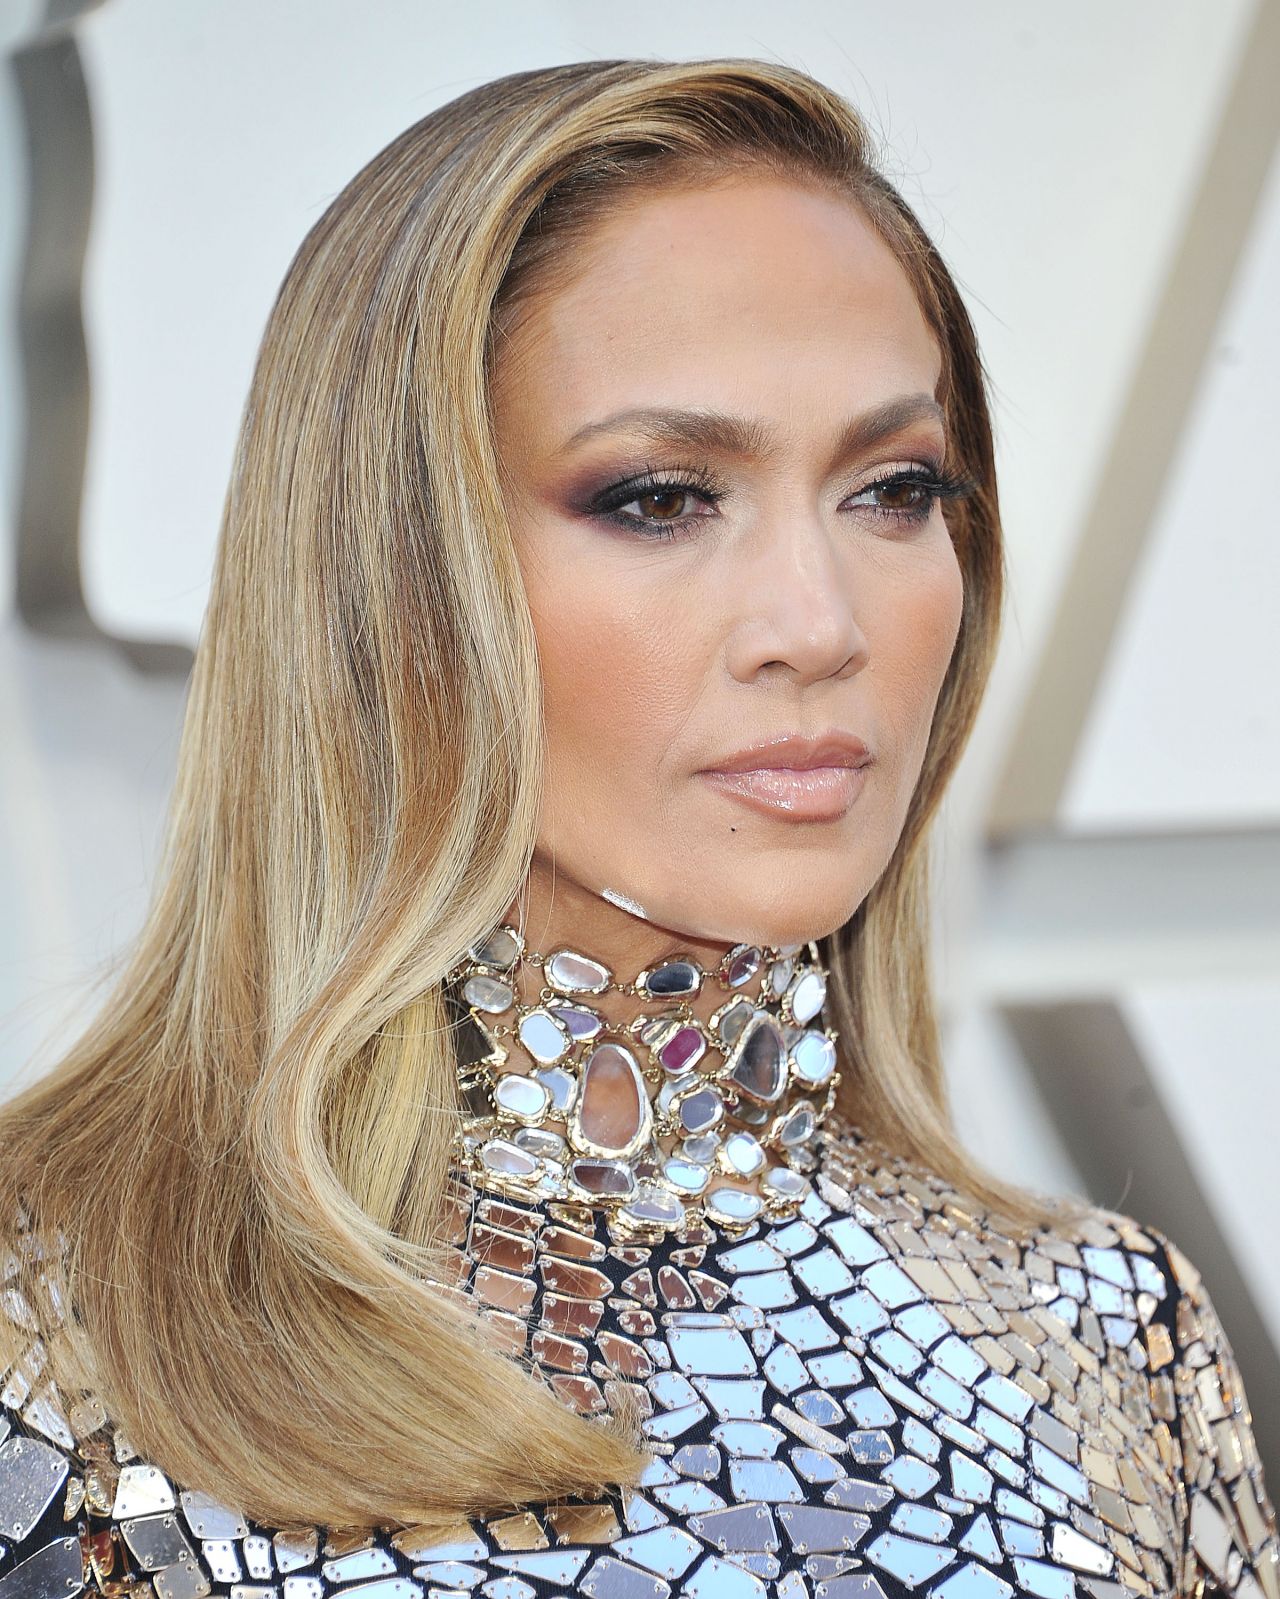 Jennifer Lopez – Oscars 2019 Red Carpet